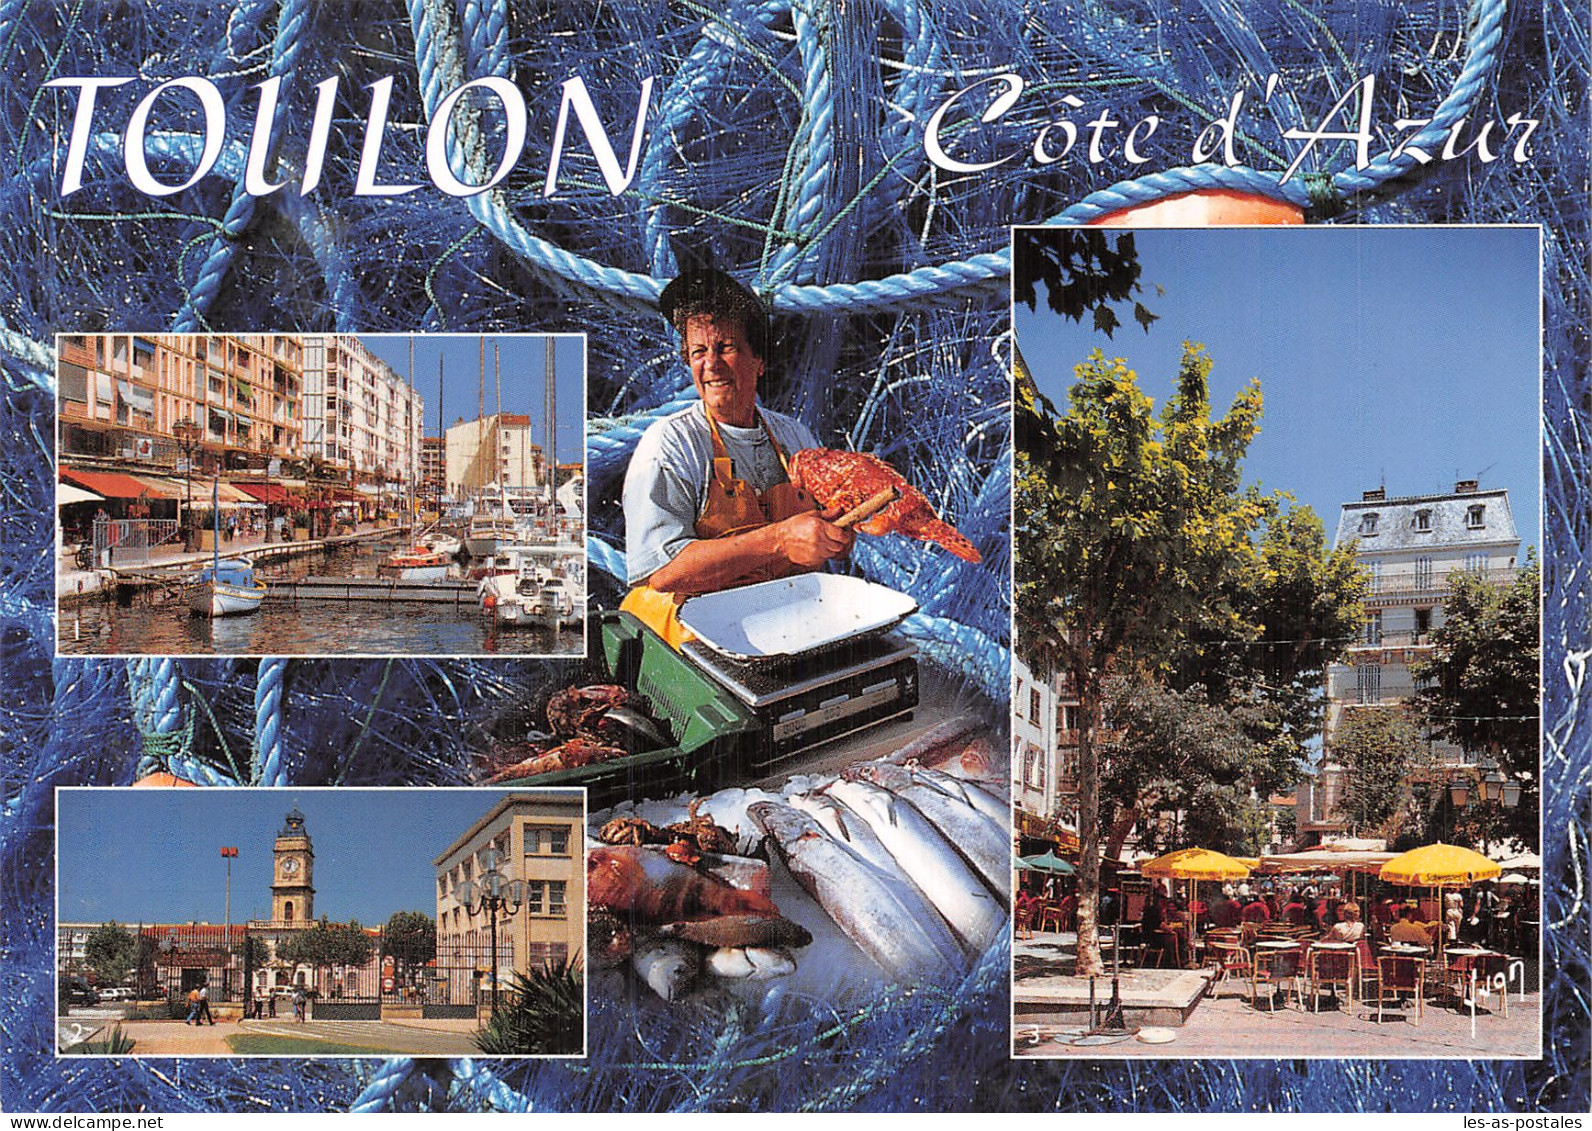 83 TOULON - Toulon